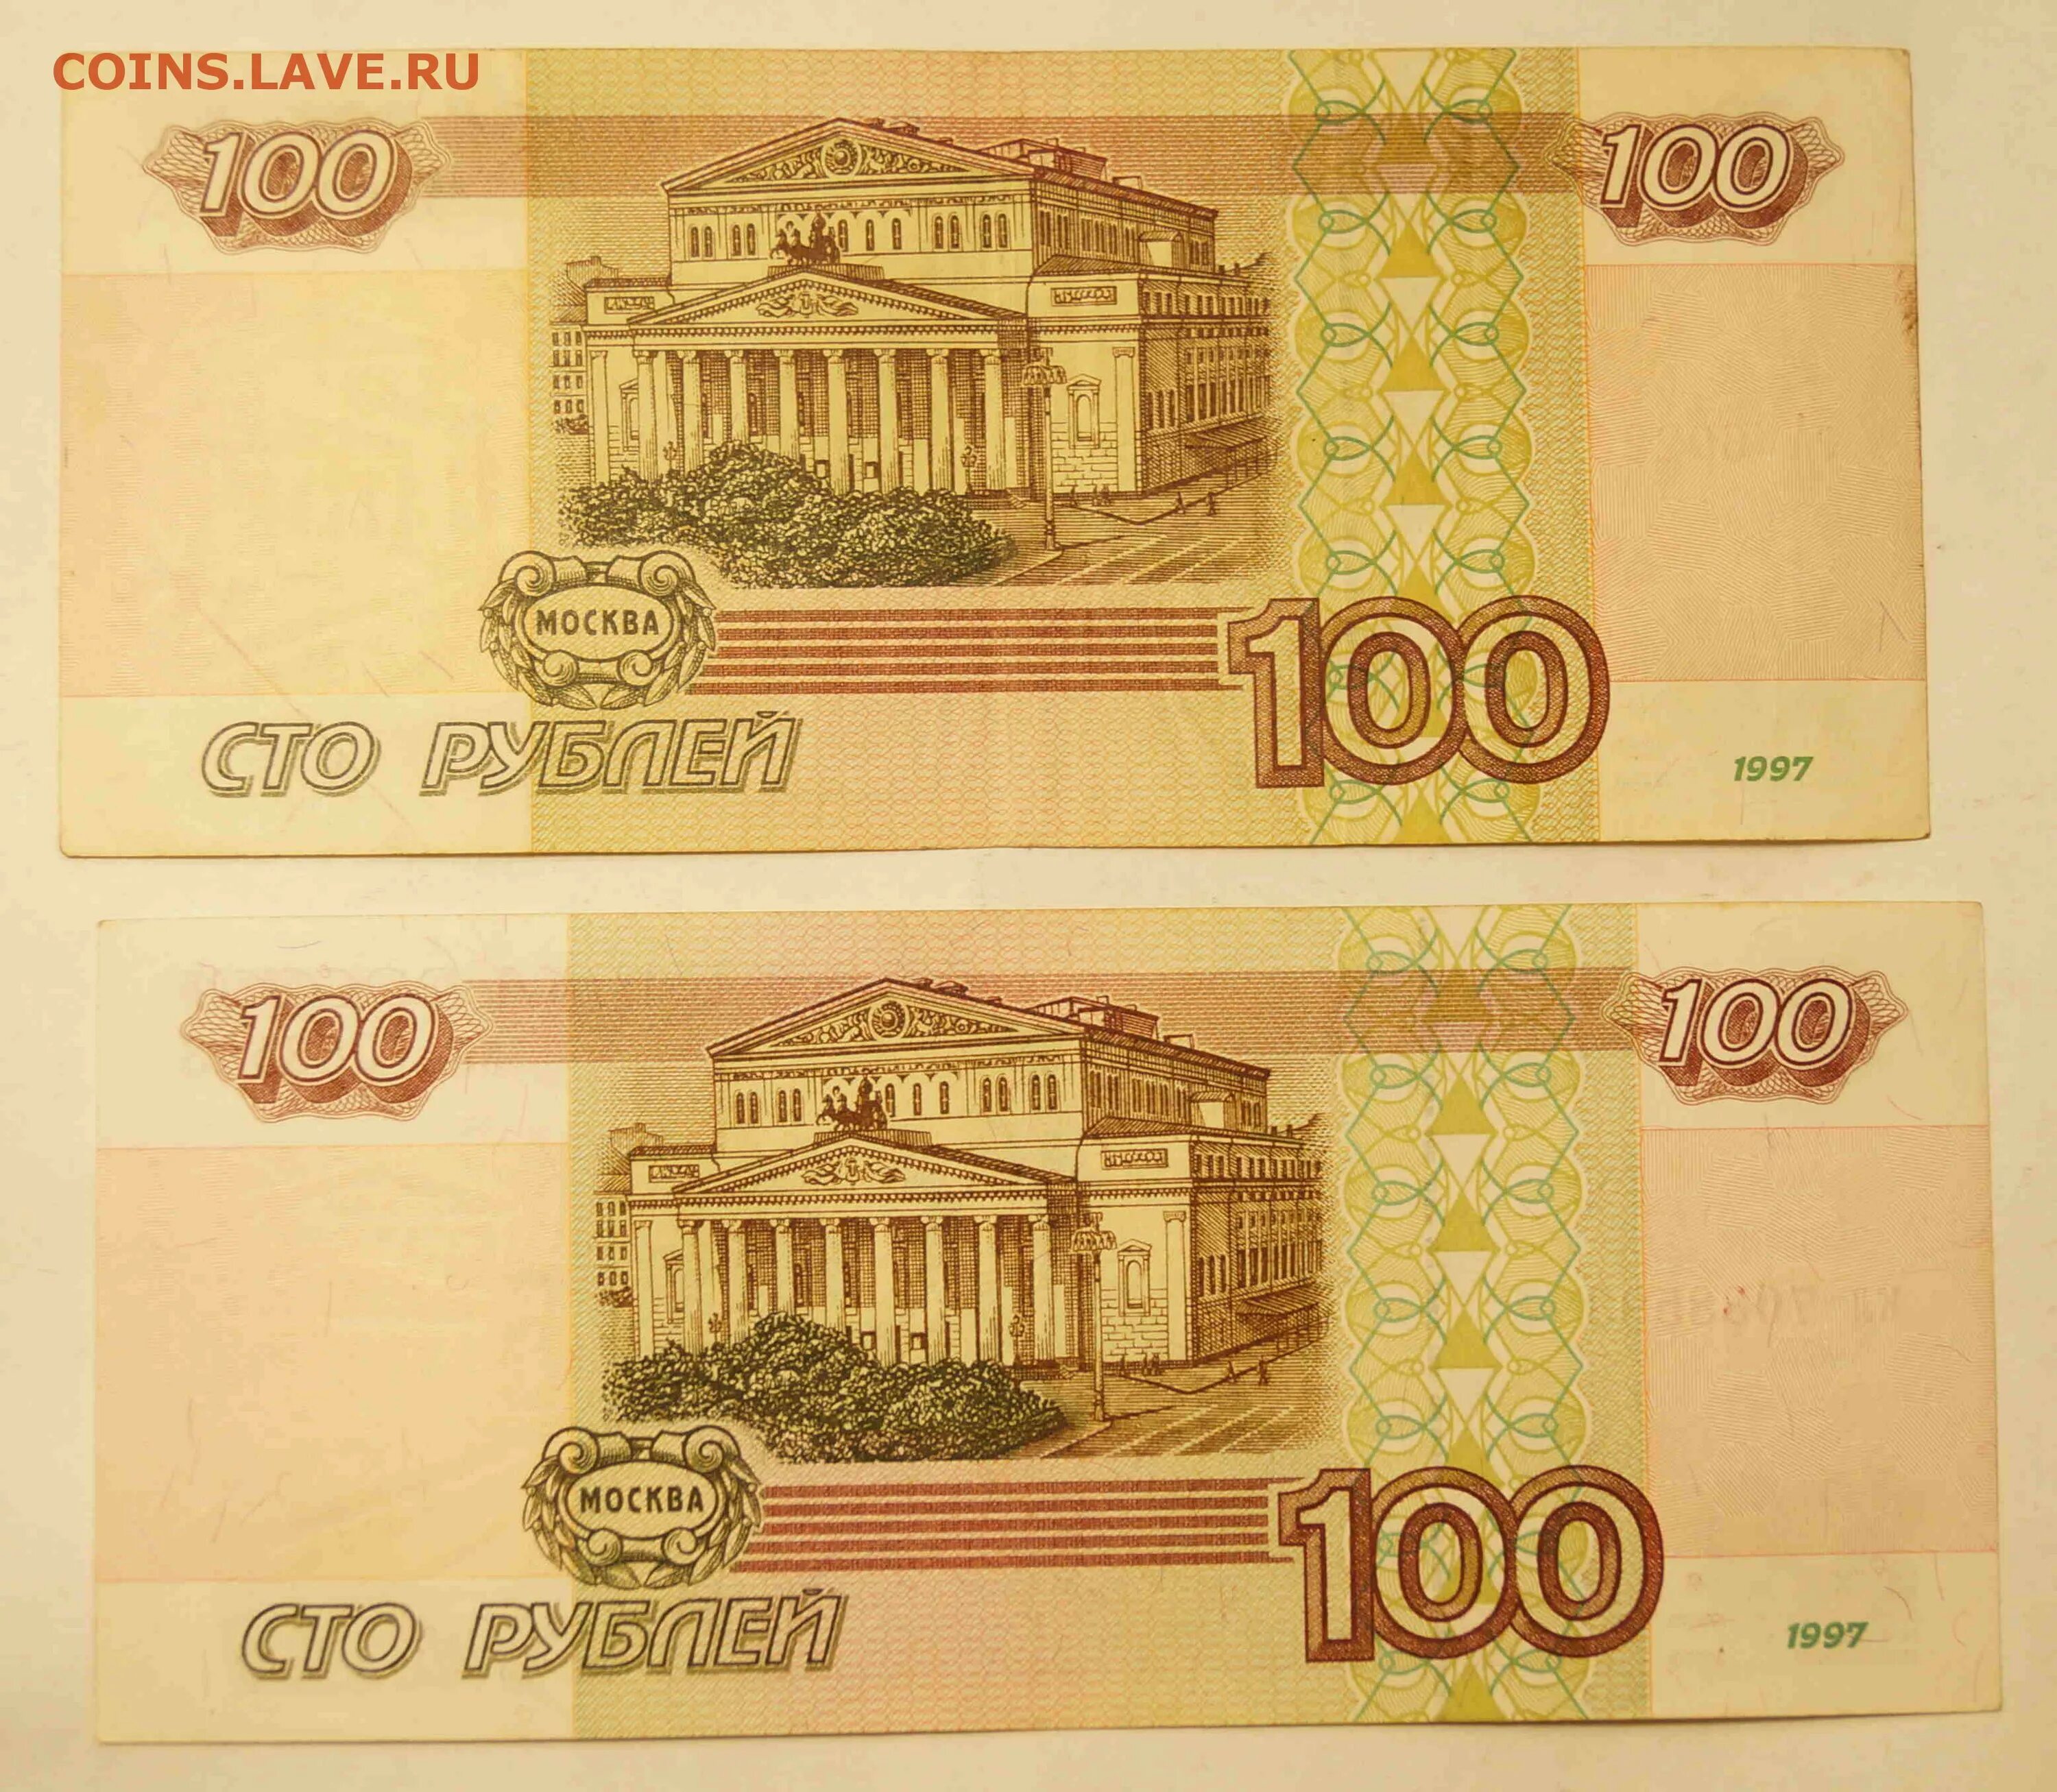 100 в нулевой. 100 000 Рублей 1995 года. СТО тысяч рублей купюра. 100 Тысяч рублей банкнота. Купюра 100000 1995 года.